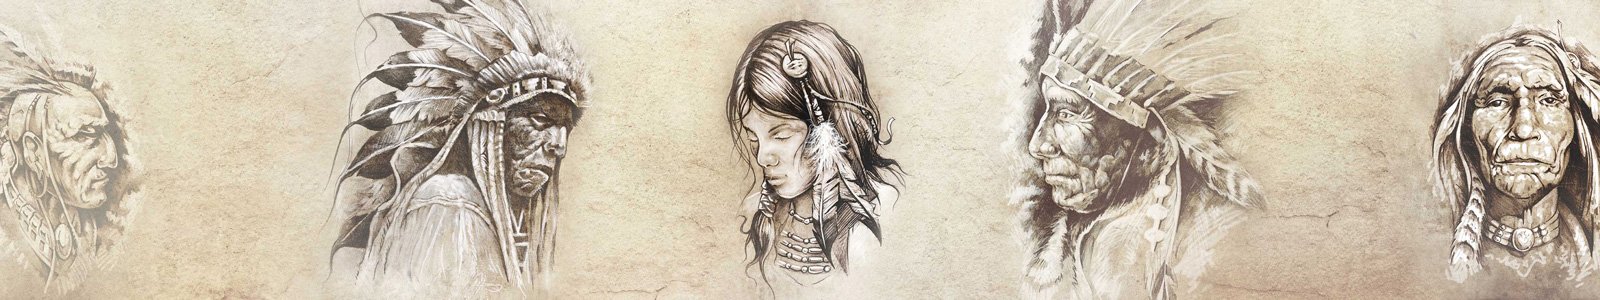 №7152 - Иллюстрации индейцев на состаренном фоне